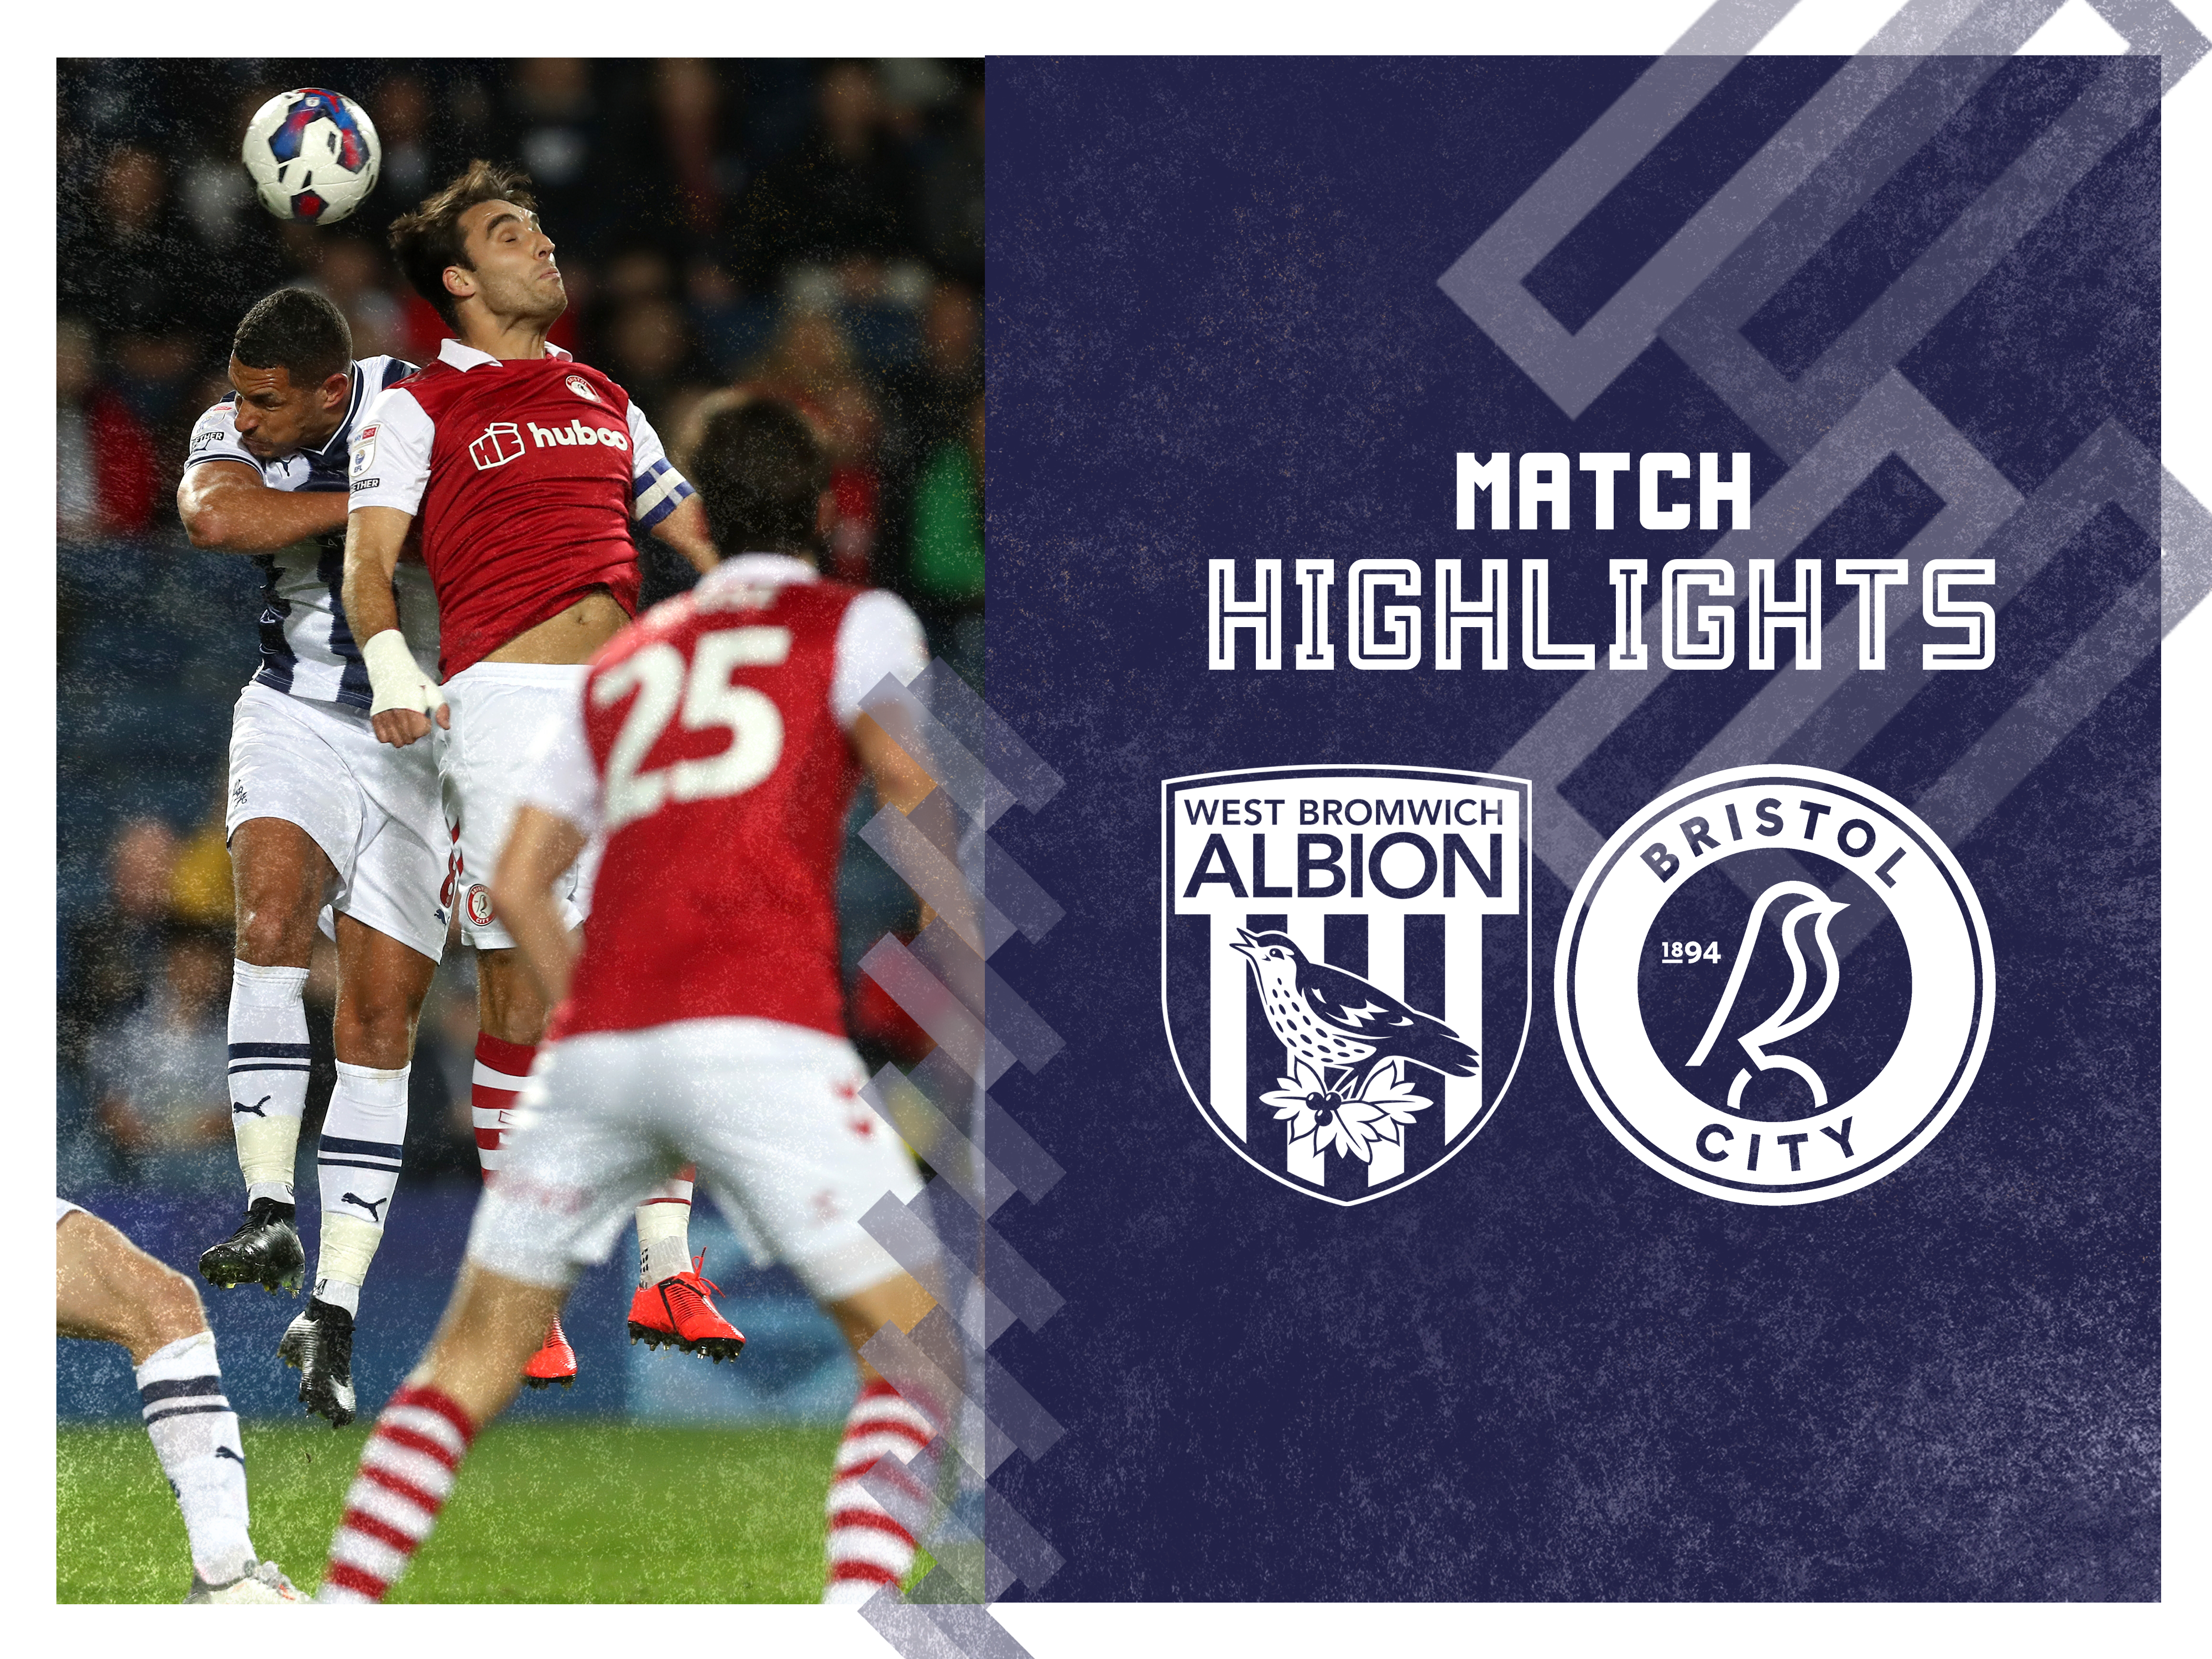 Albion v Bristol City match highlights